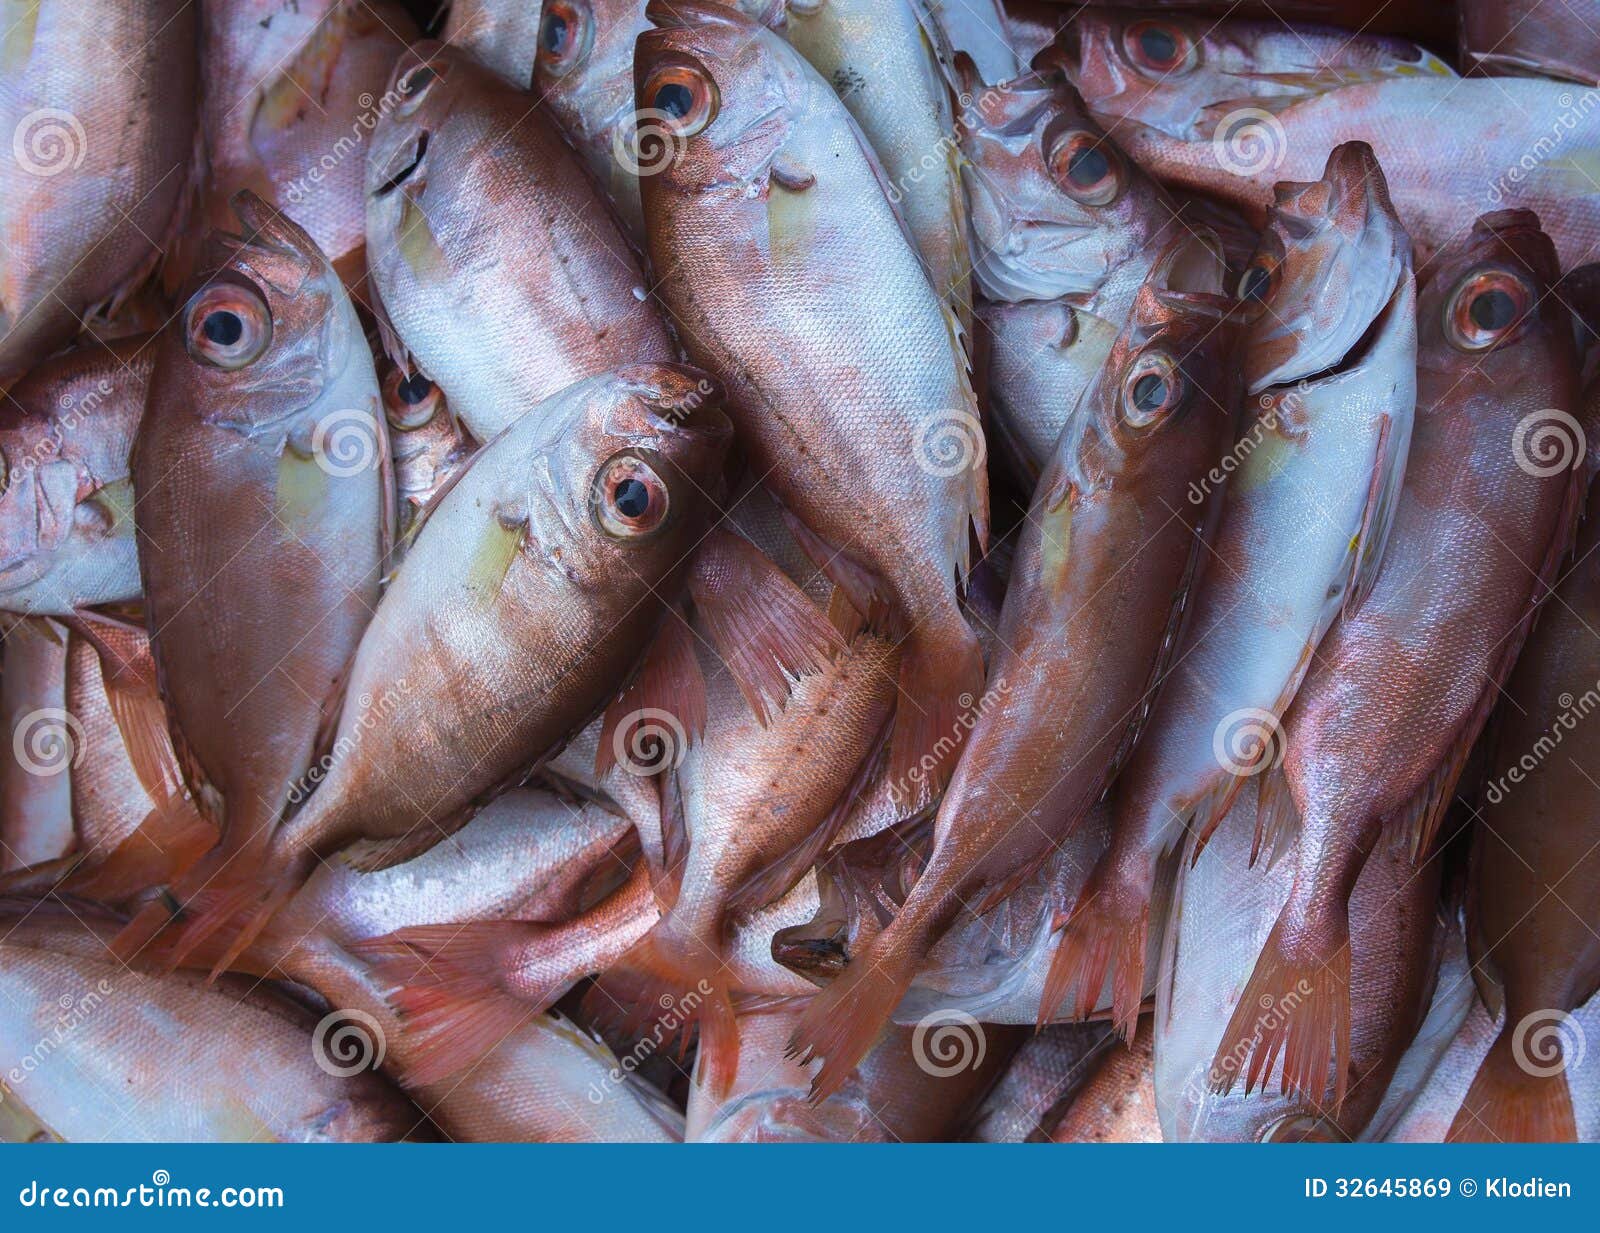 Mercado de Vietnam Phan Thiet - marzo de 2012: Ciérrese para arriba de los pescados cobre-coloreados cogidos en el mar del sur de China.